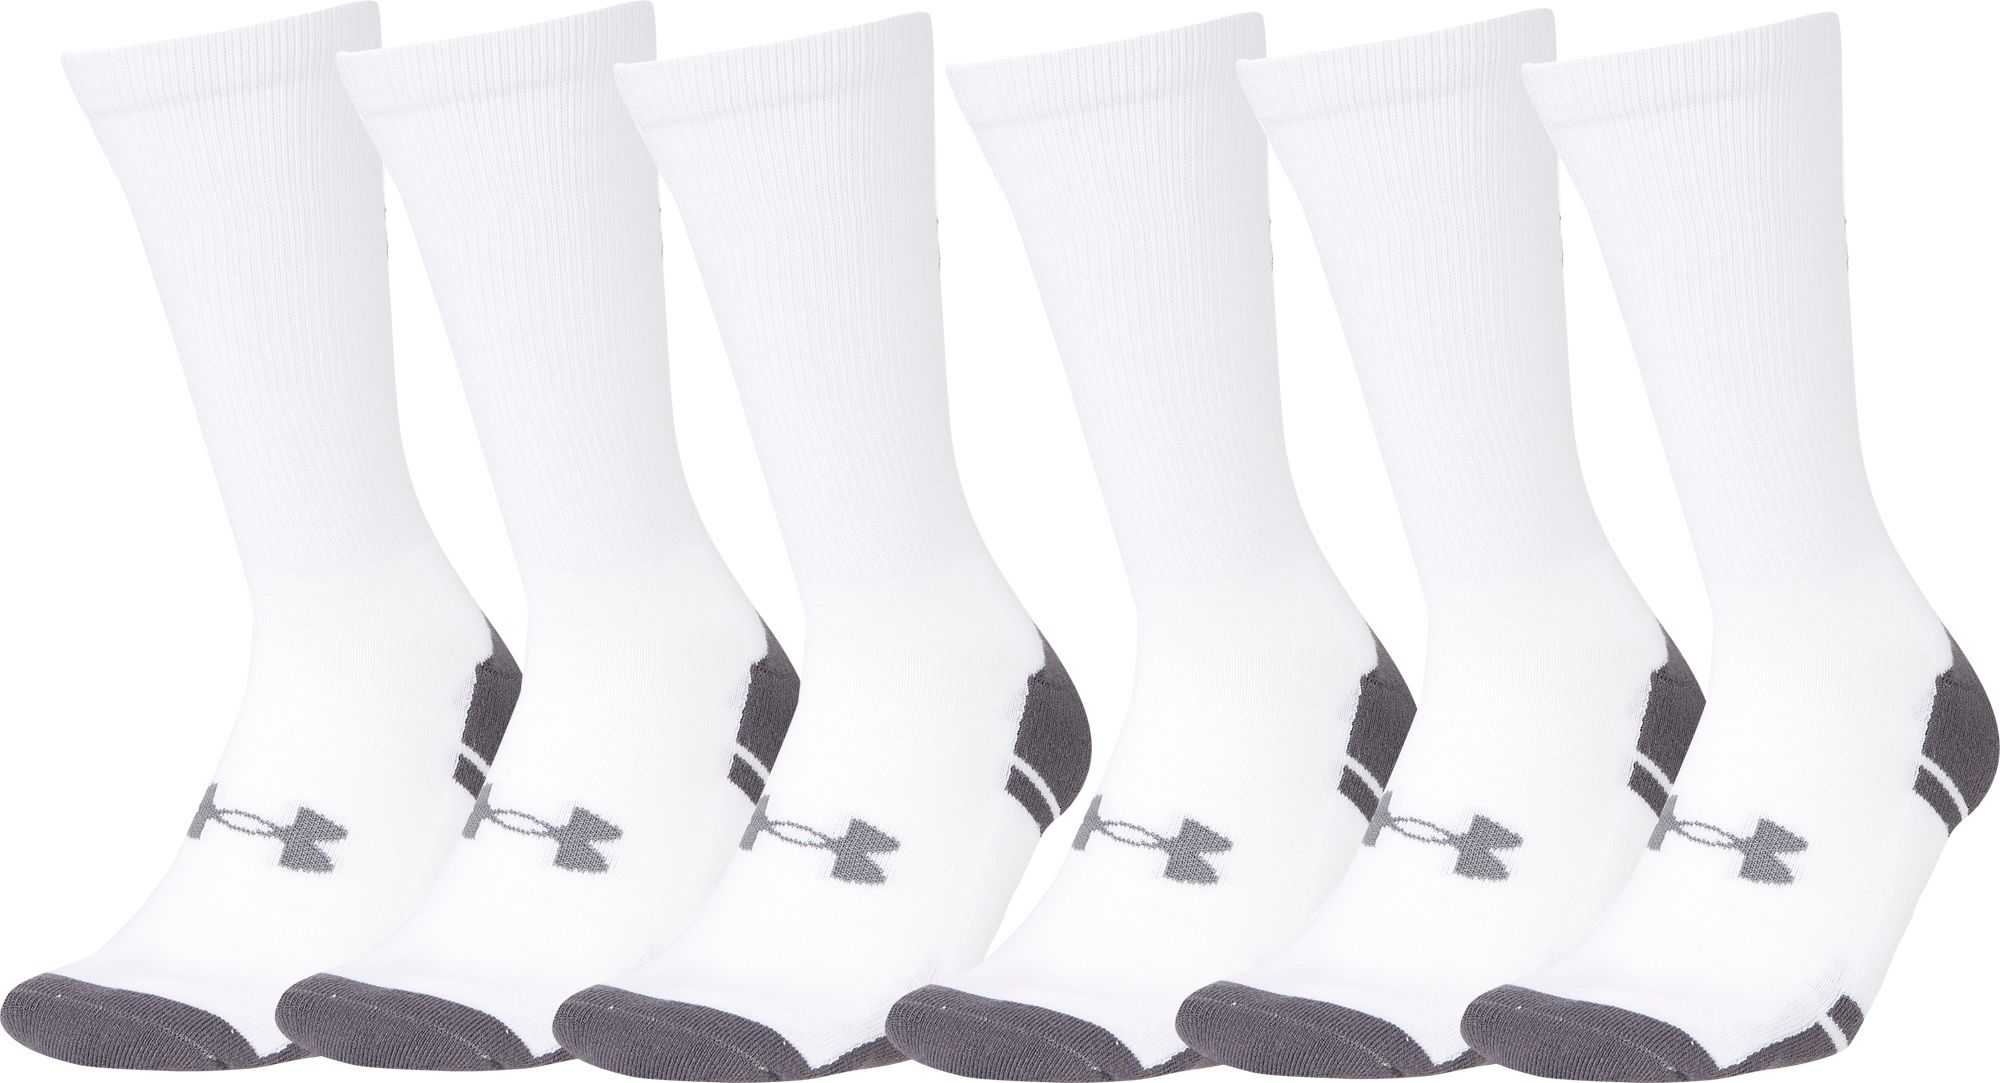 Men's Athletic Socks | Best Price Guarantee at DICK'S